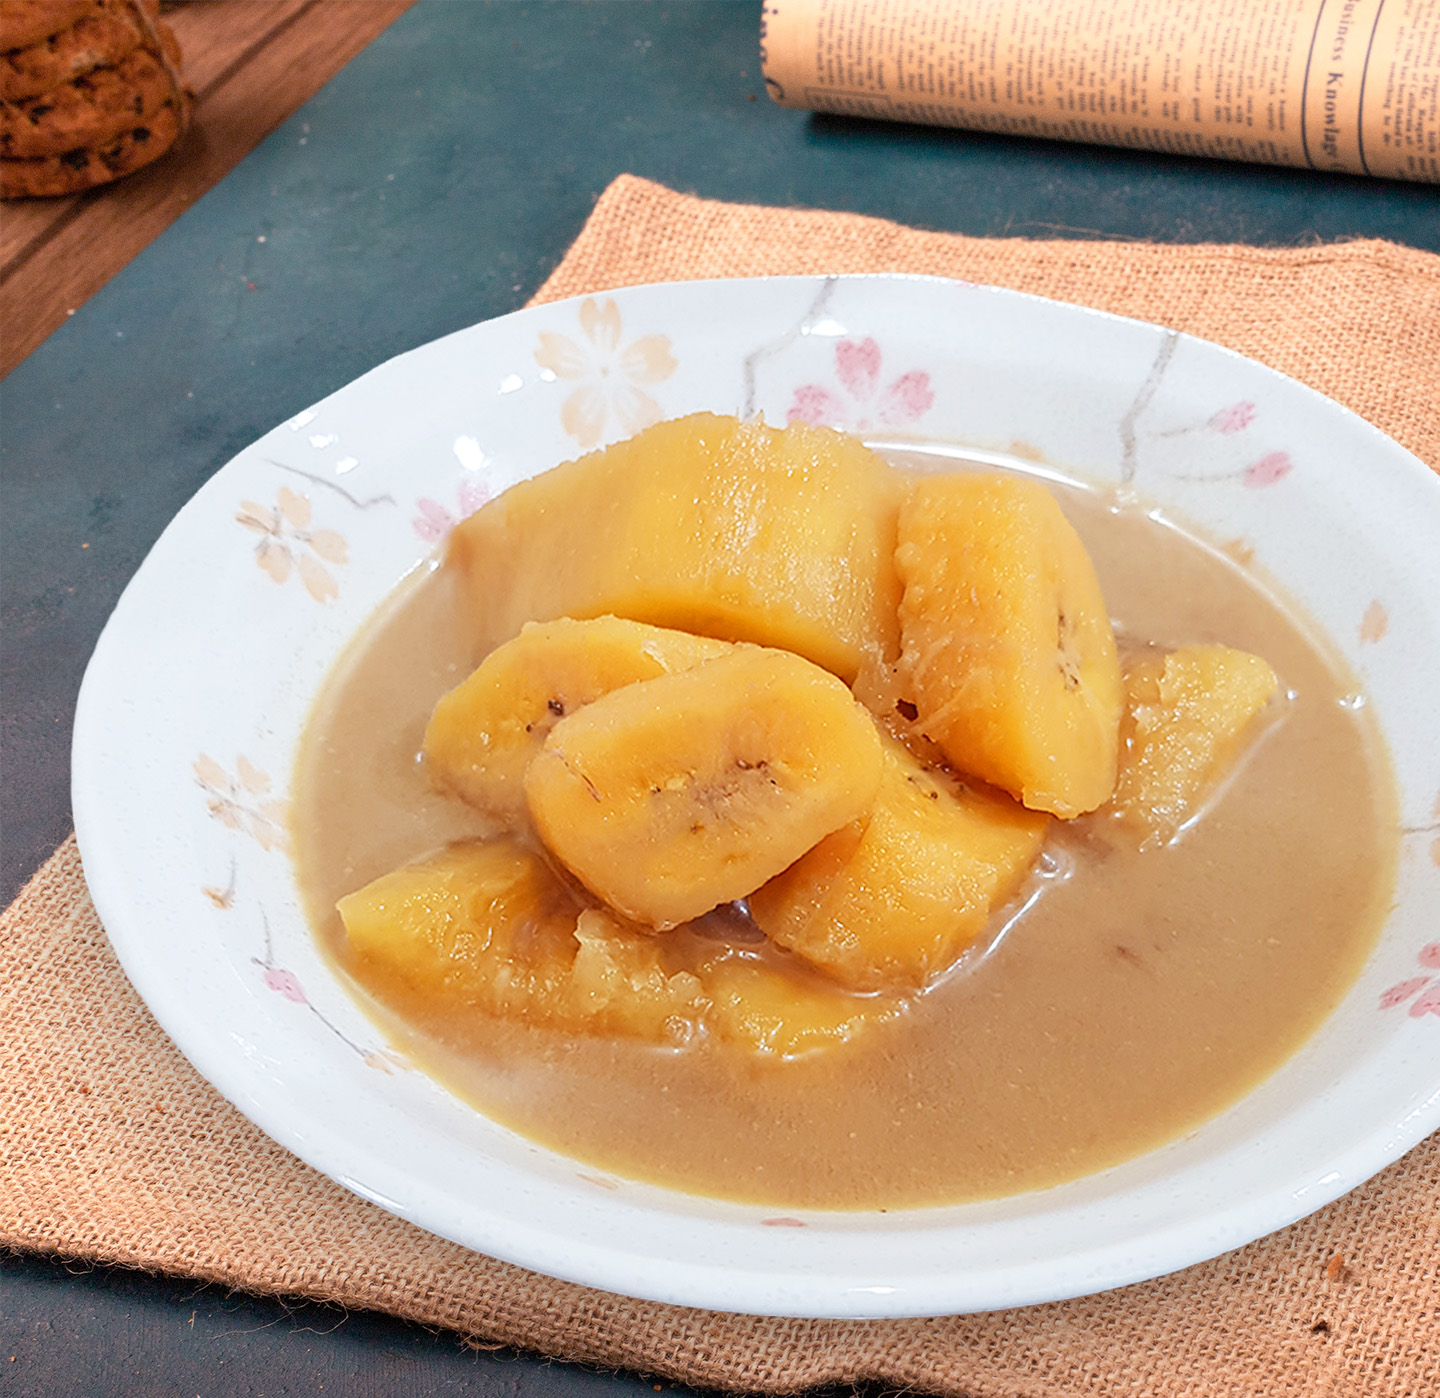 Kolak pisang ubi disajikan dengan potongan pisang dan ubi lembut dan memiliki kuah kecoklatan terbuat dari gula aren